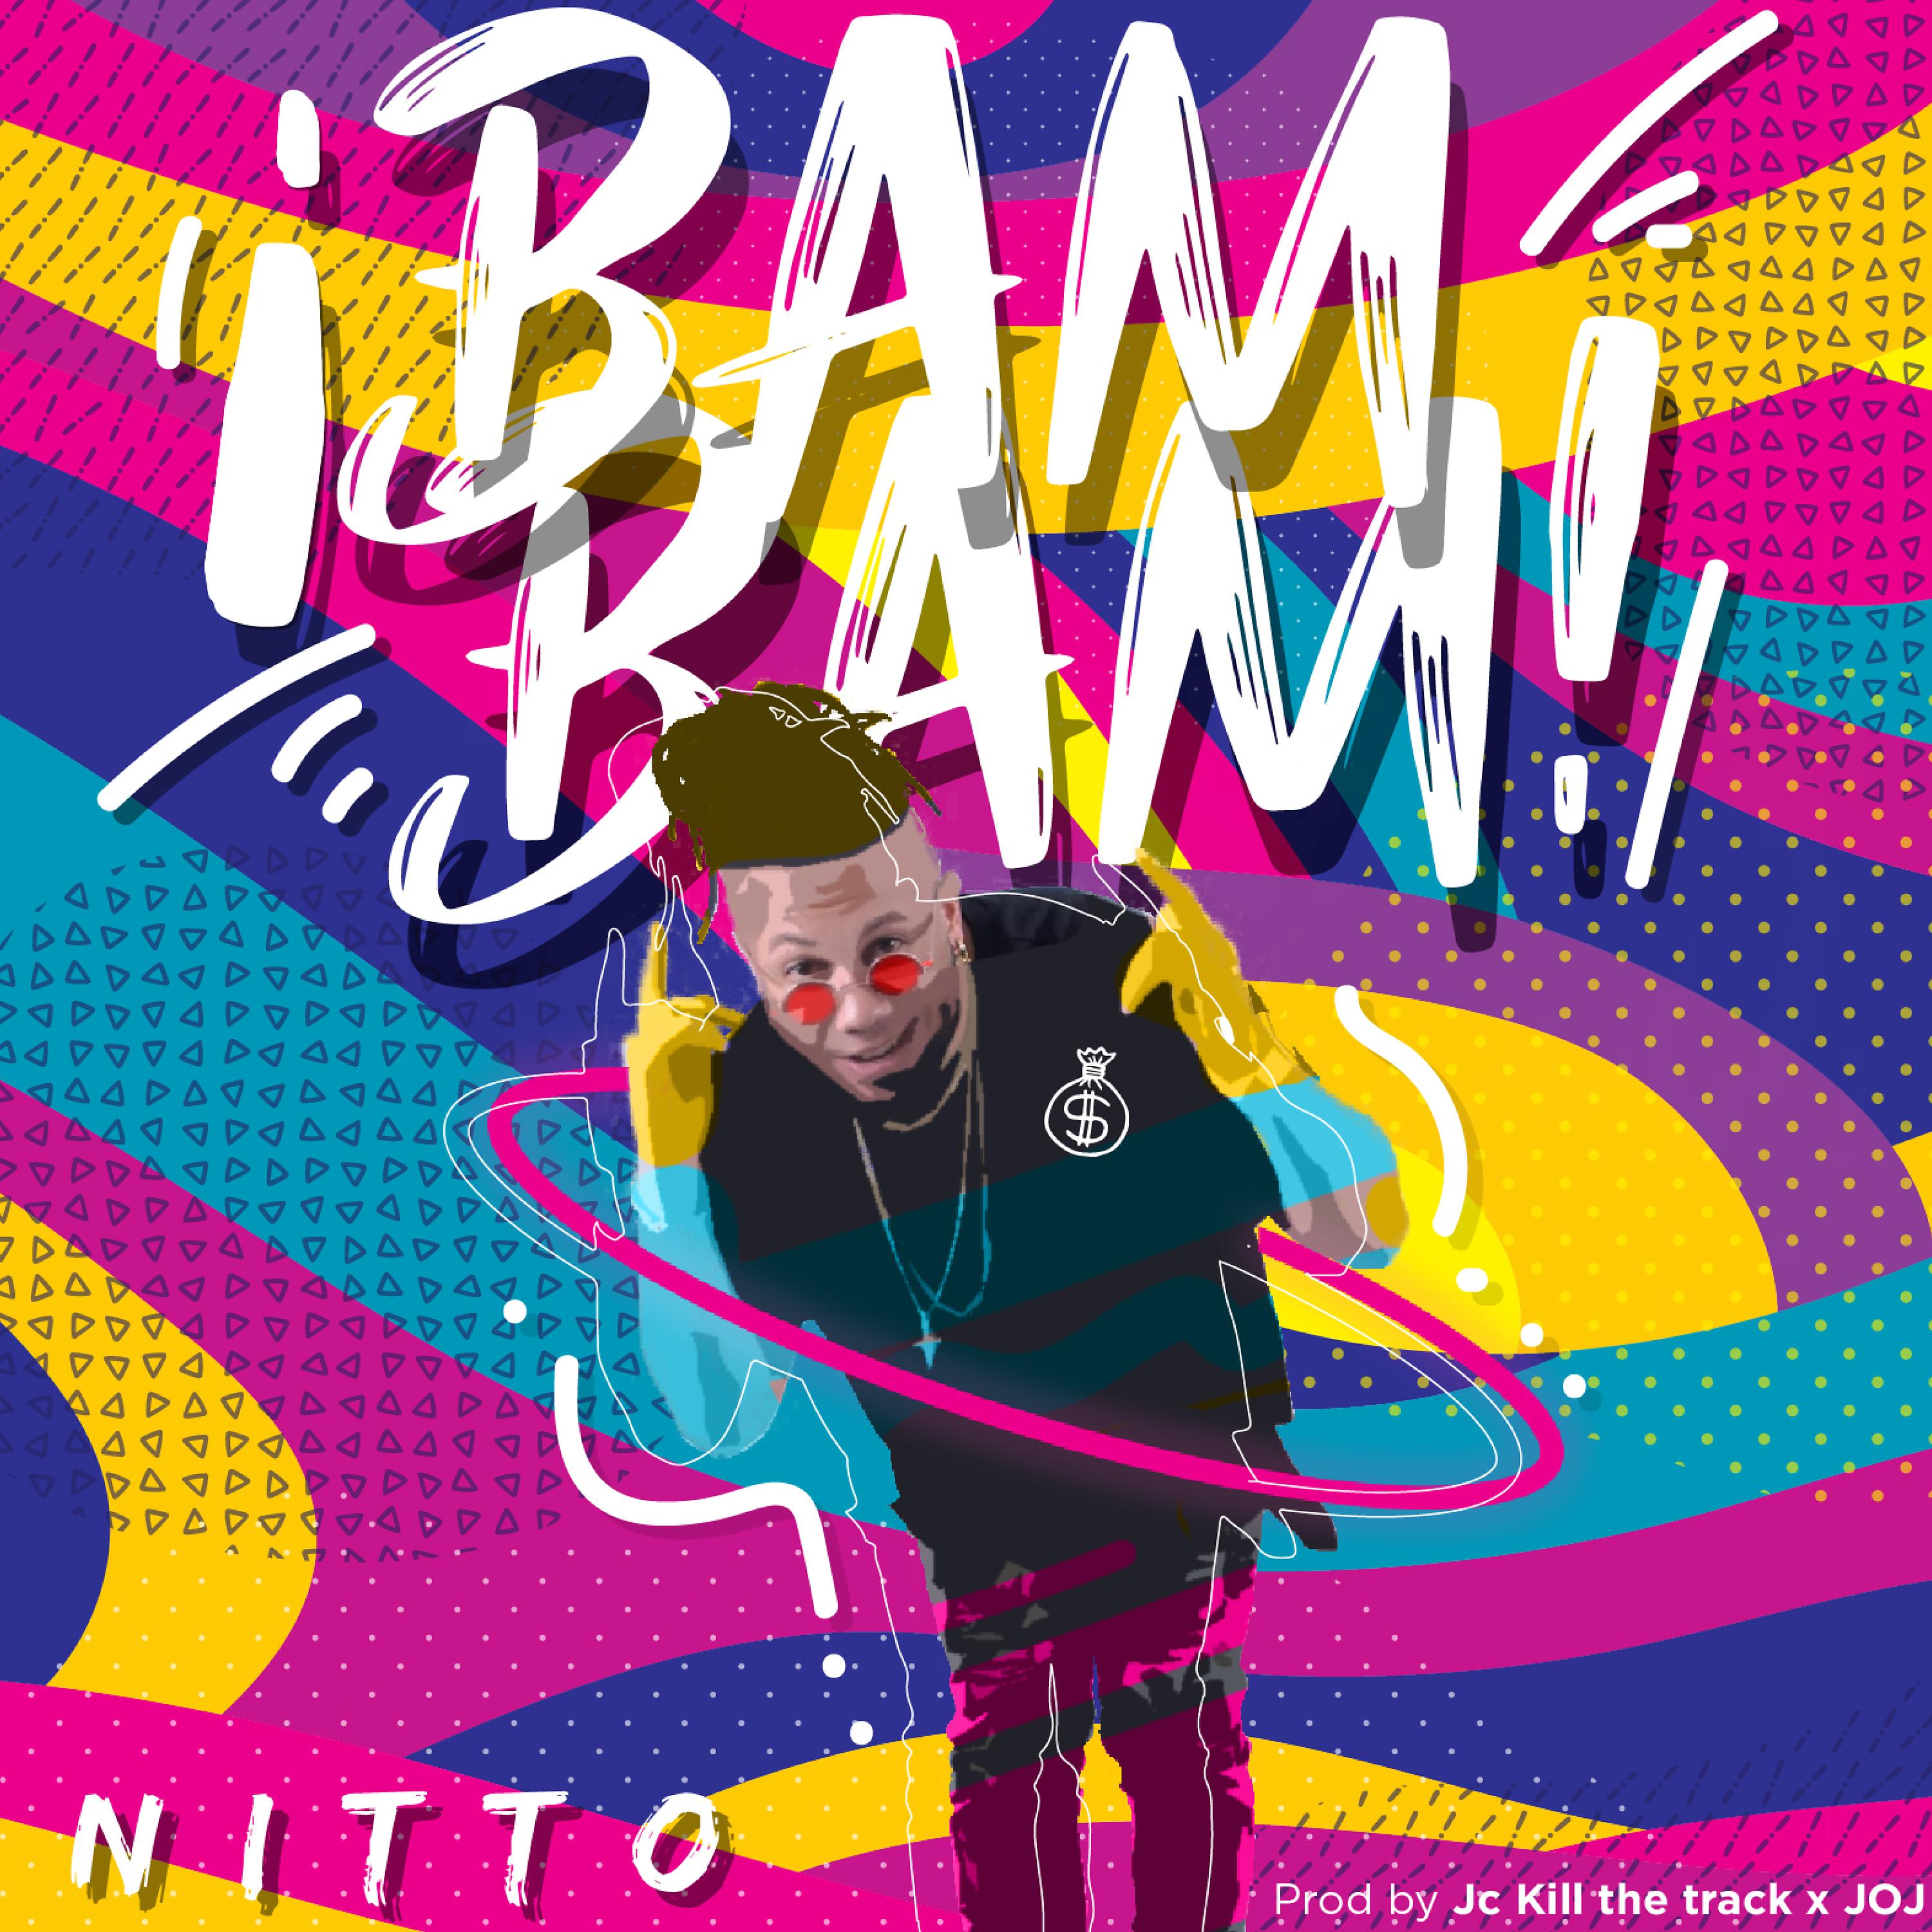 Постер альбома Bam Bam